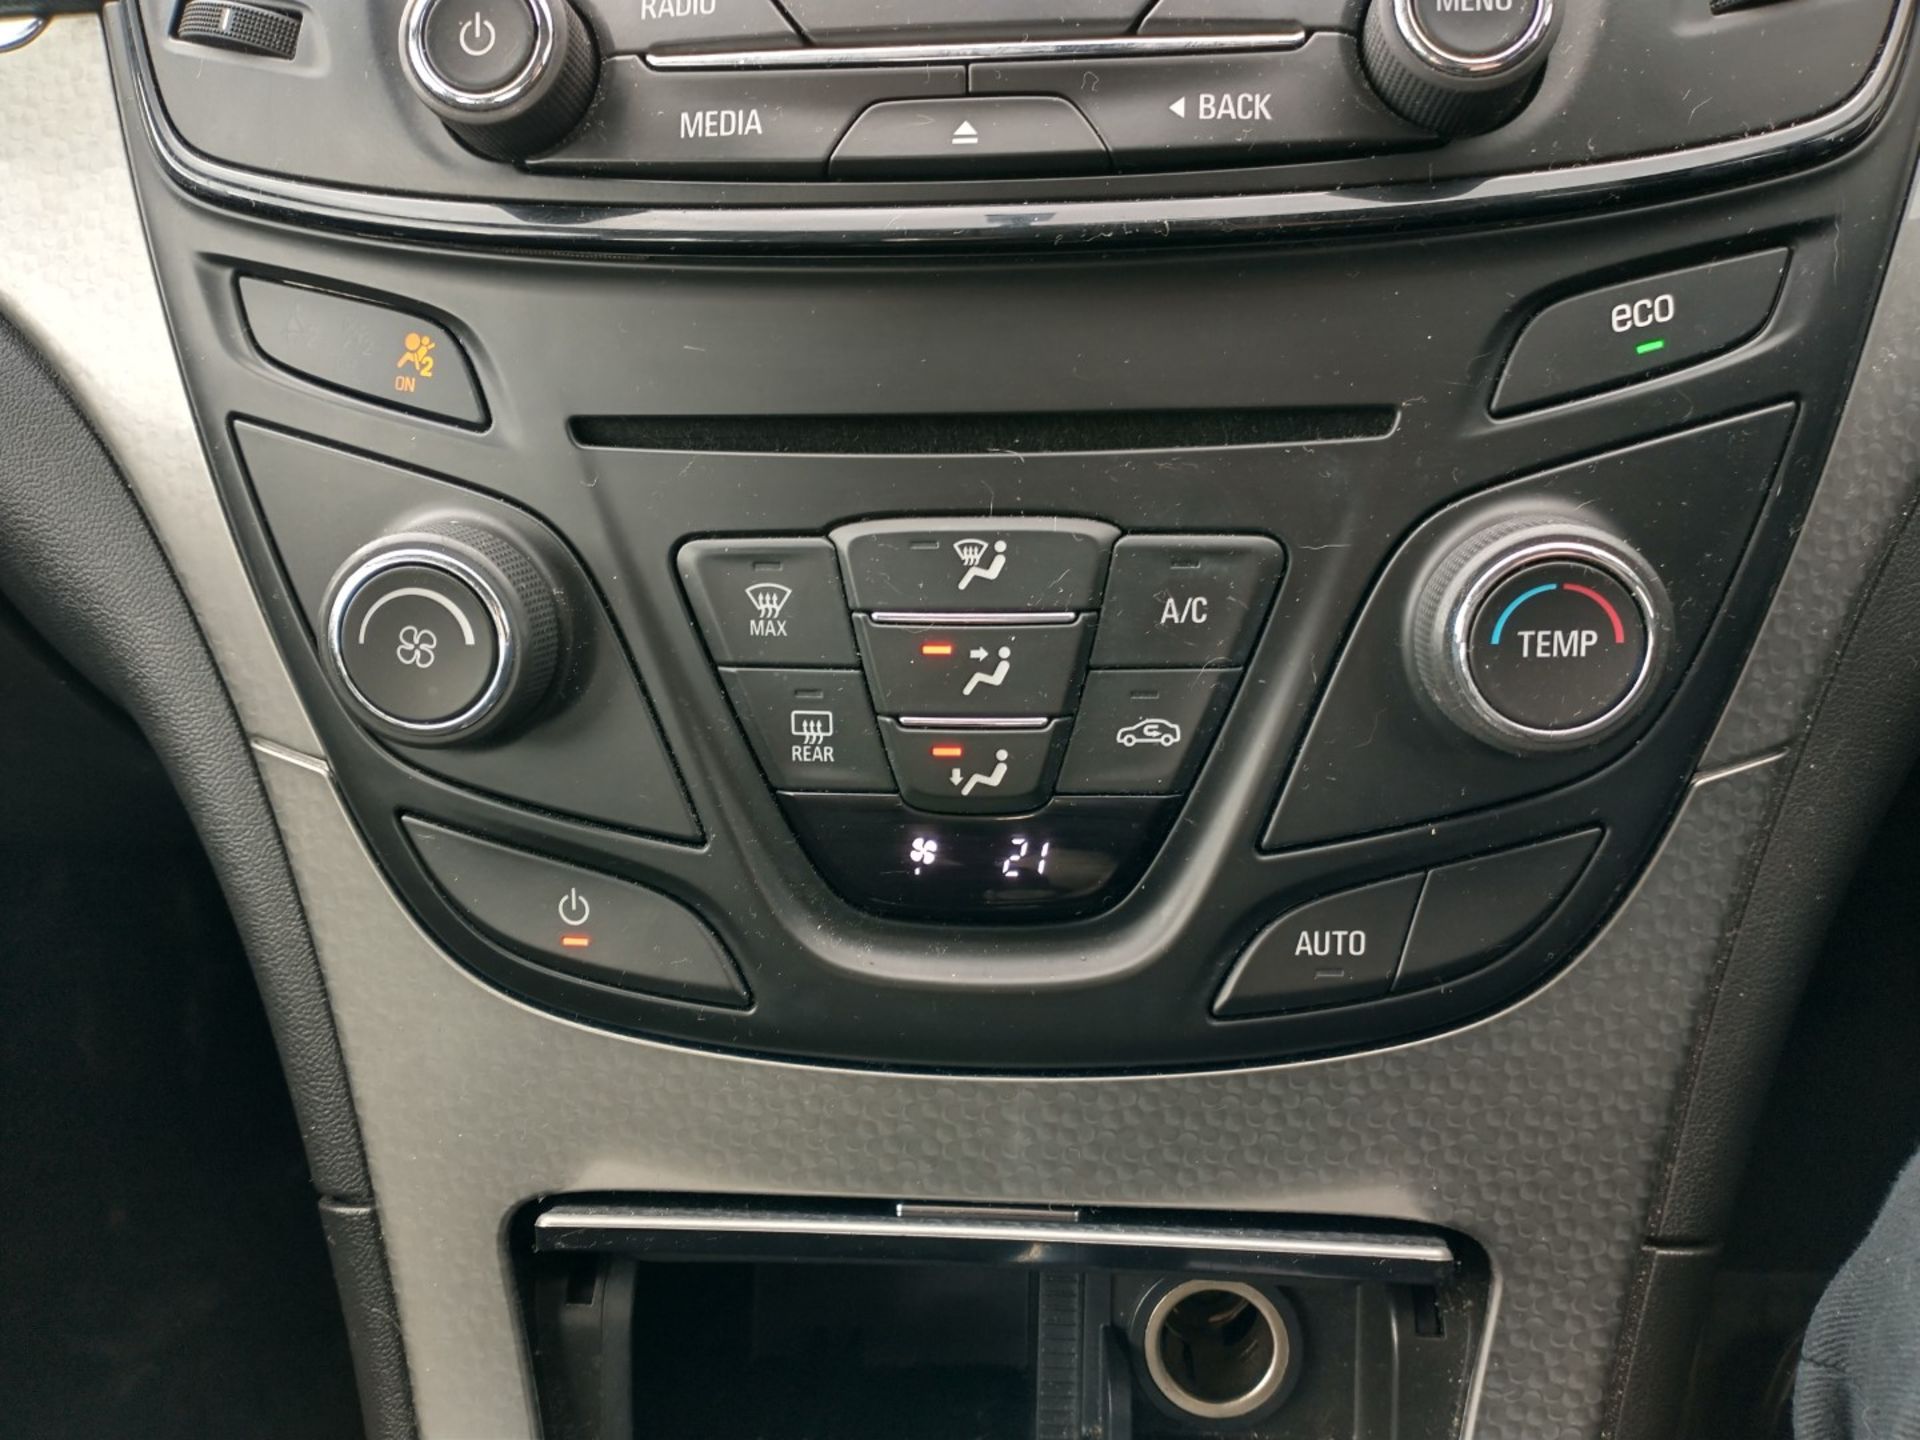 2014 Vauxhall Insignia 2.0 CDTI Design Nav 5 Door Hatchback - CL505 - NO VAT ON THE HAMMER - - Image 12 of 13